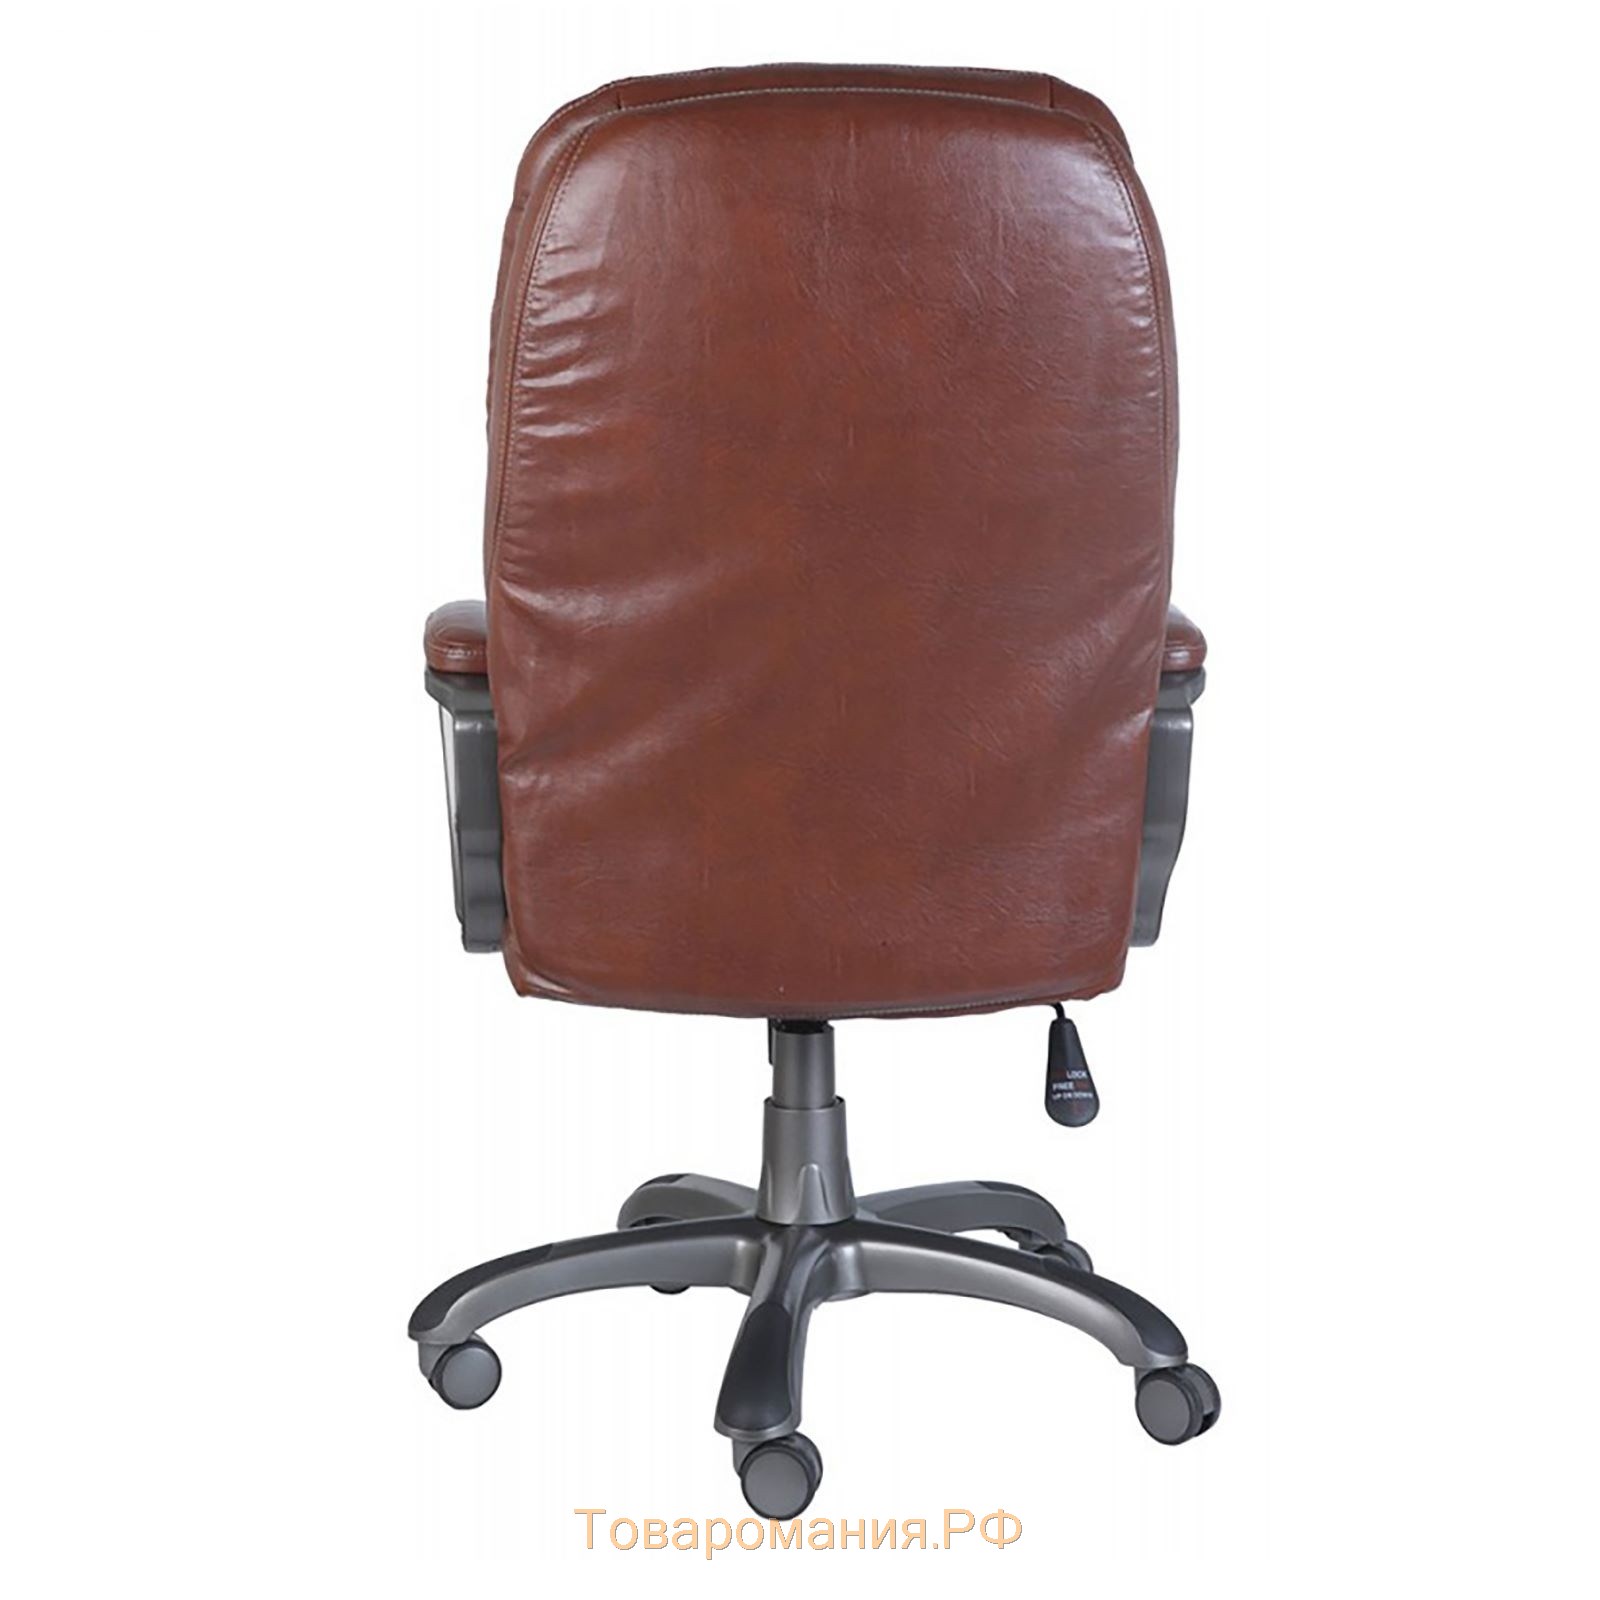 Кресло руководителя CH-868N, коричневый искусственная кожа